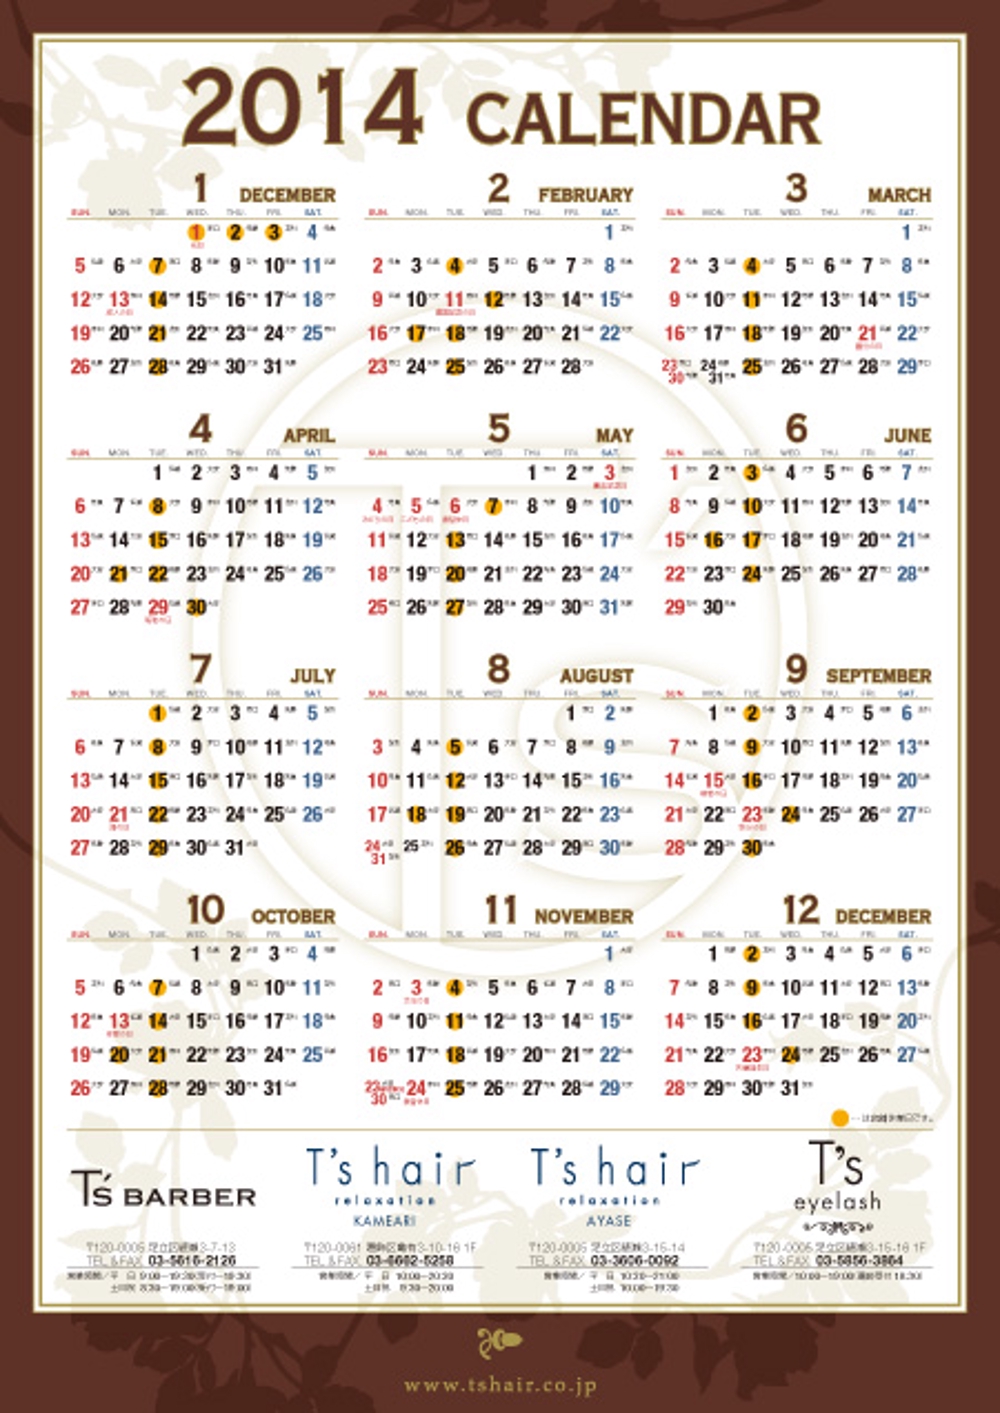  Calendar14.jpg